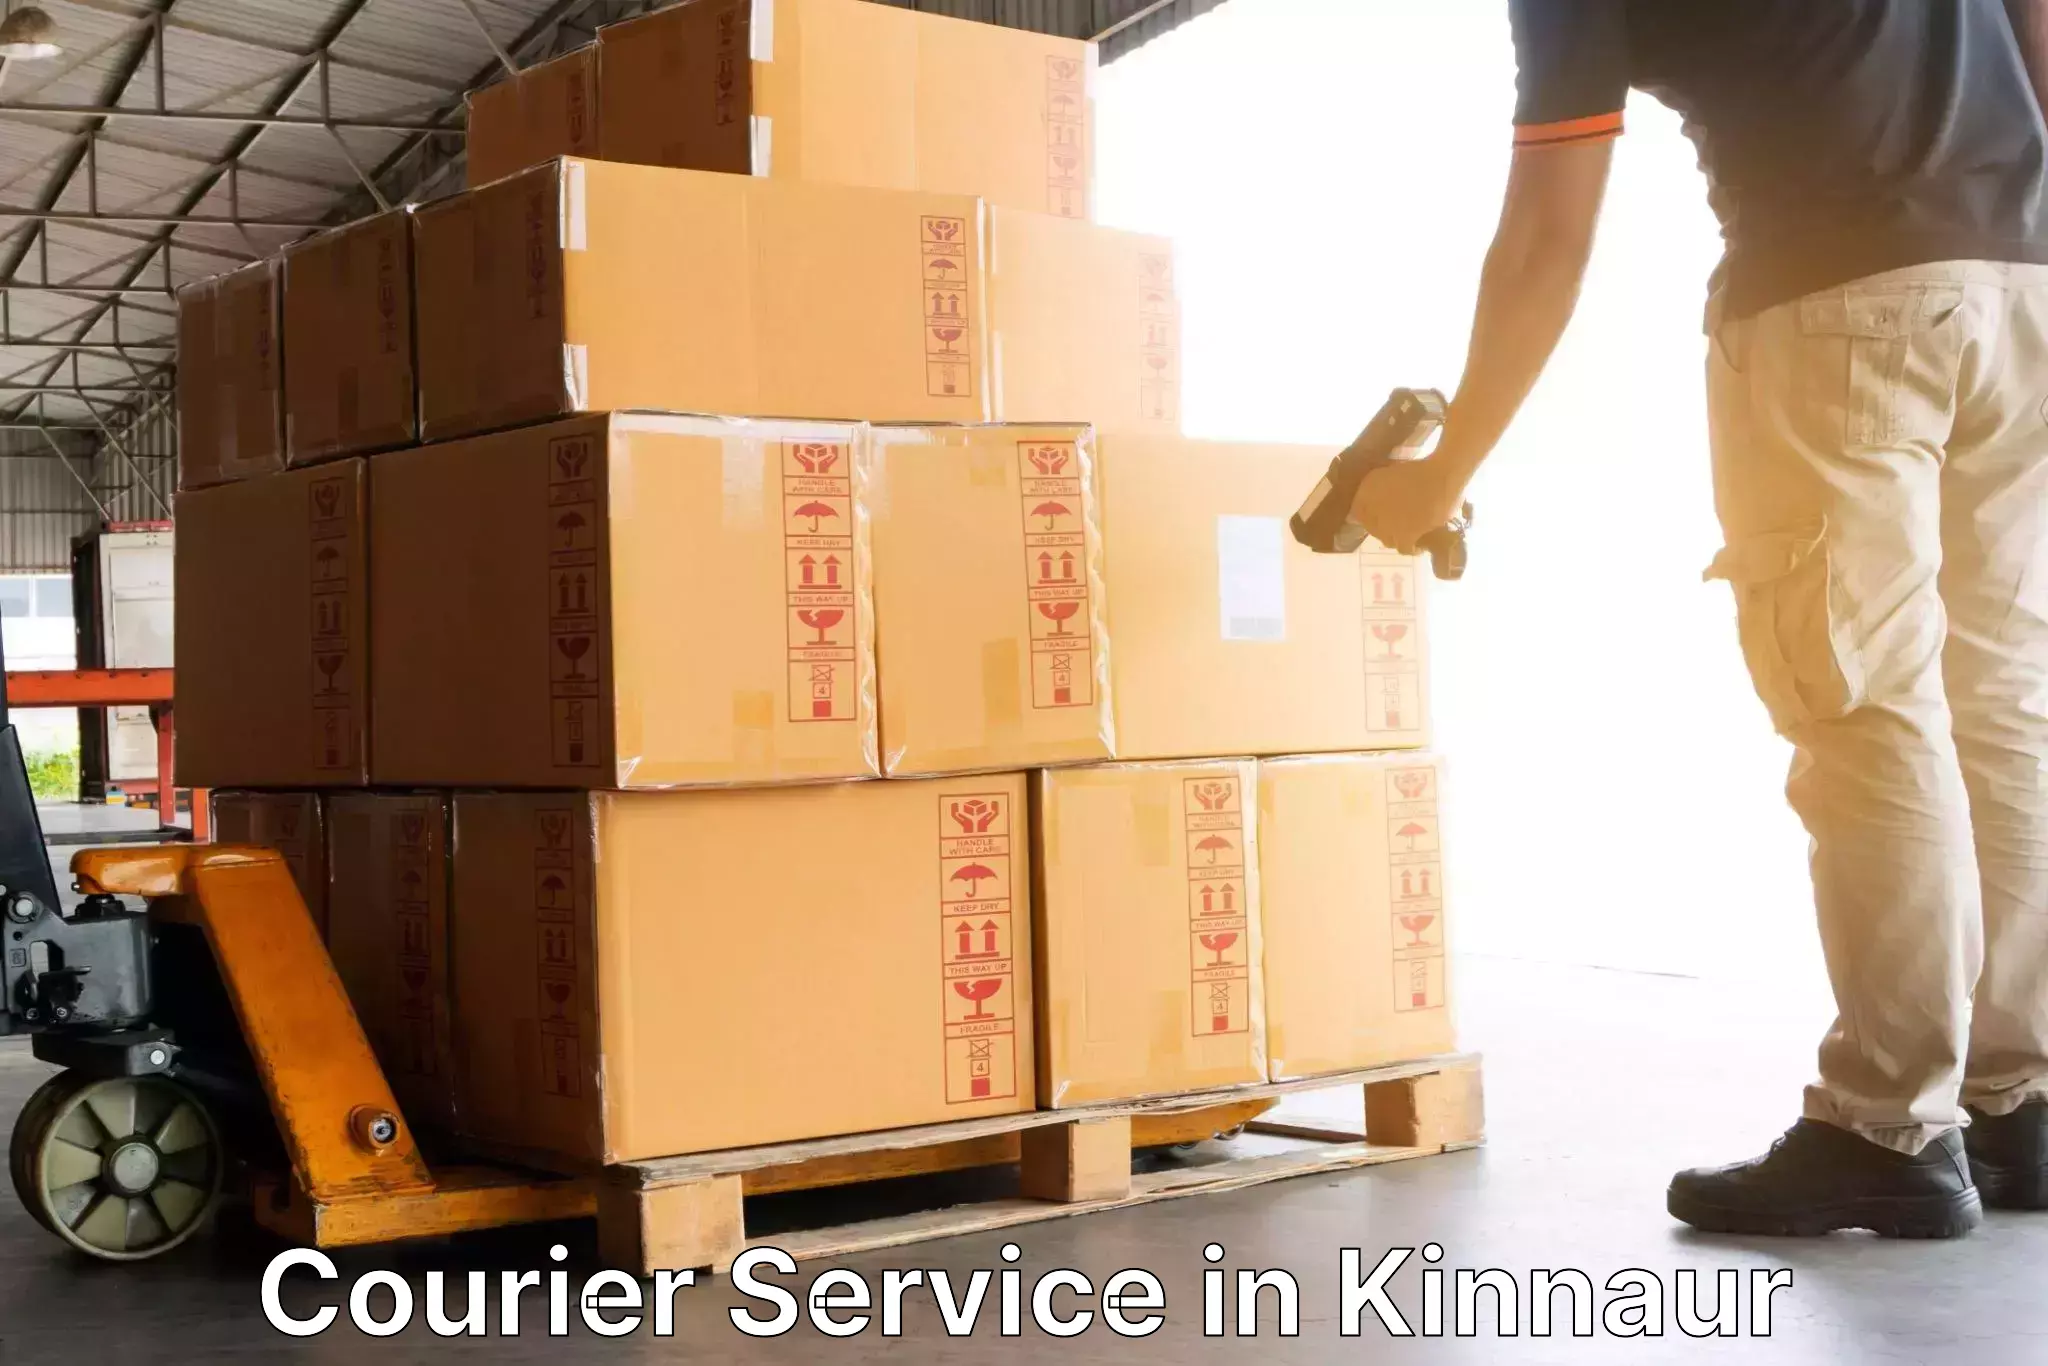 Customer-centric shipping in Kinnaur